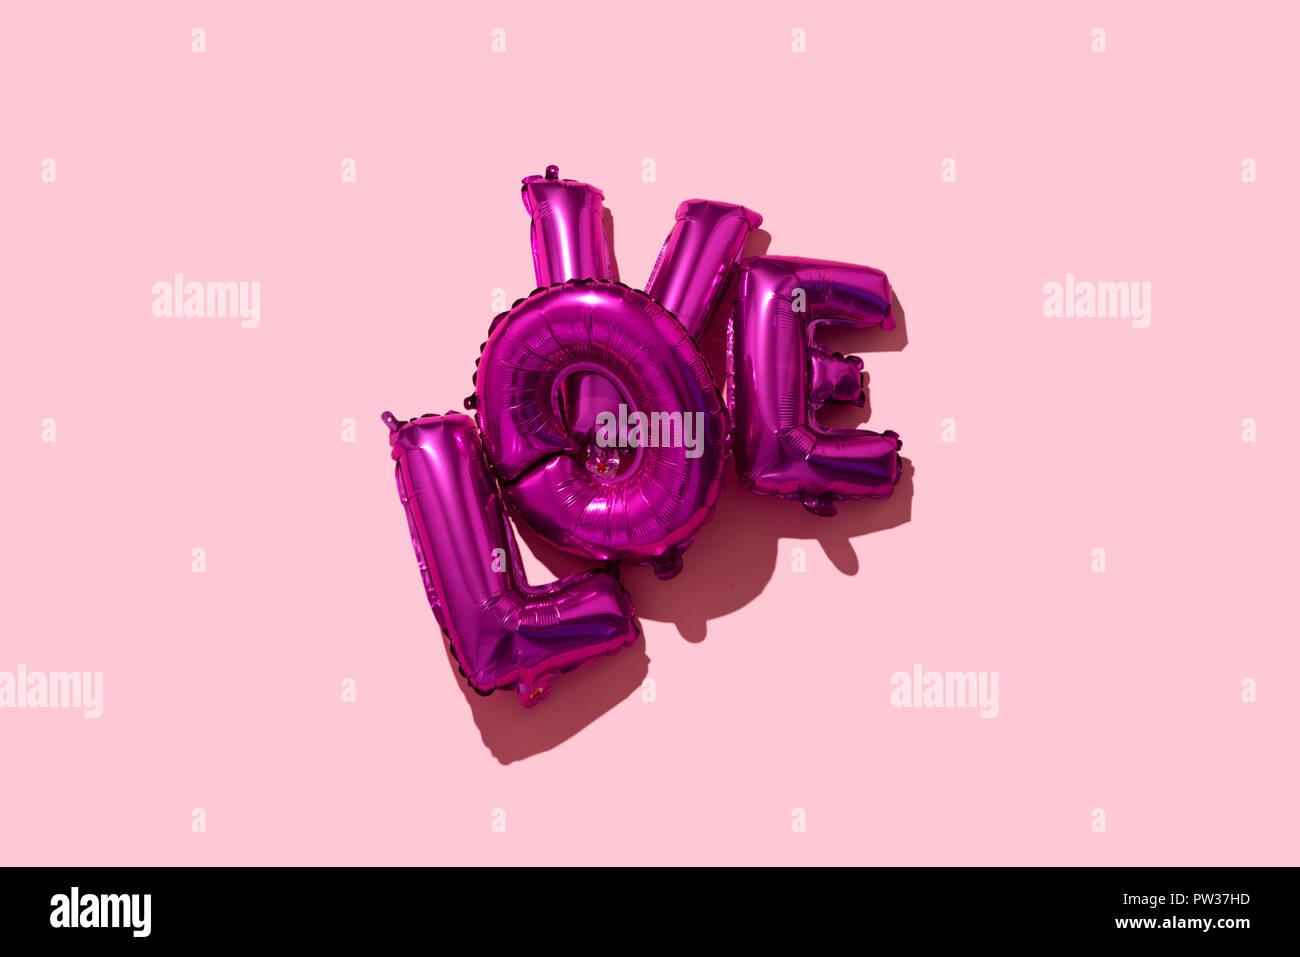 Einige fuchsia Brief-förmige Ballons, die wor Liebe auf einem rosa Hintergrund, mit einigen leeren Raum um Sie herum Stockfoto